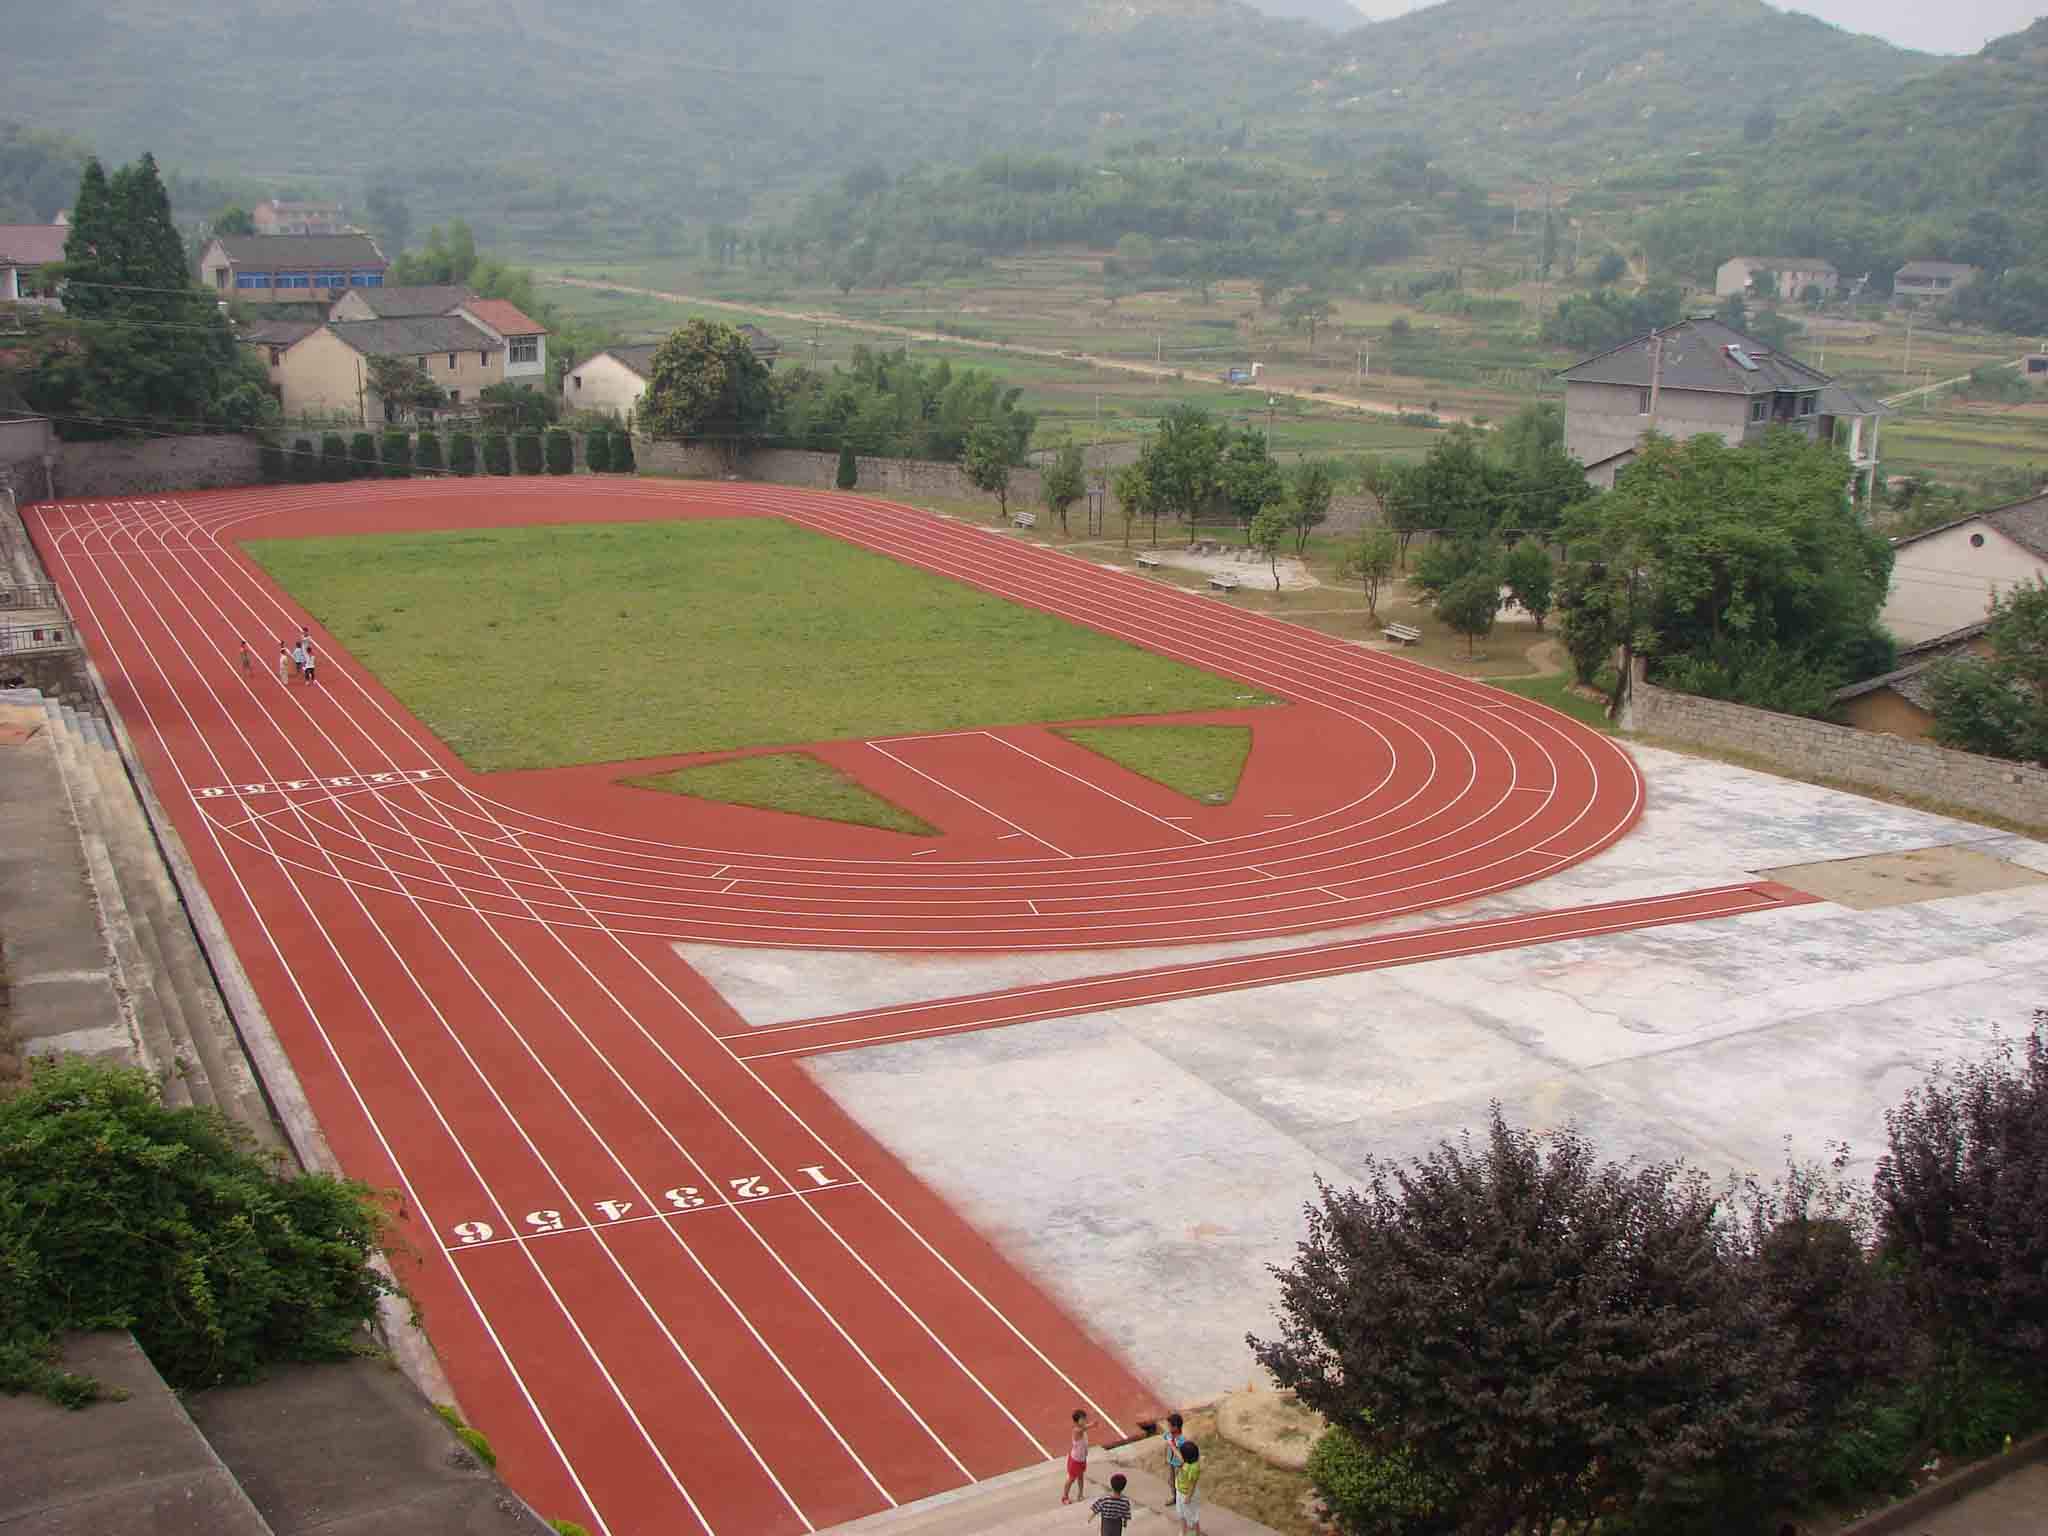 环形塑胶跑道标准尺寸——400米标准跑道尺寸、300米跑道尺寸、200米跑道尺寸